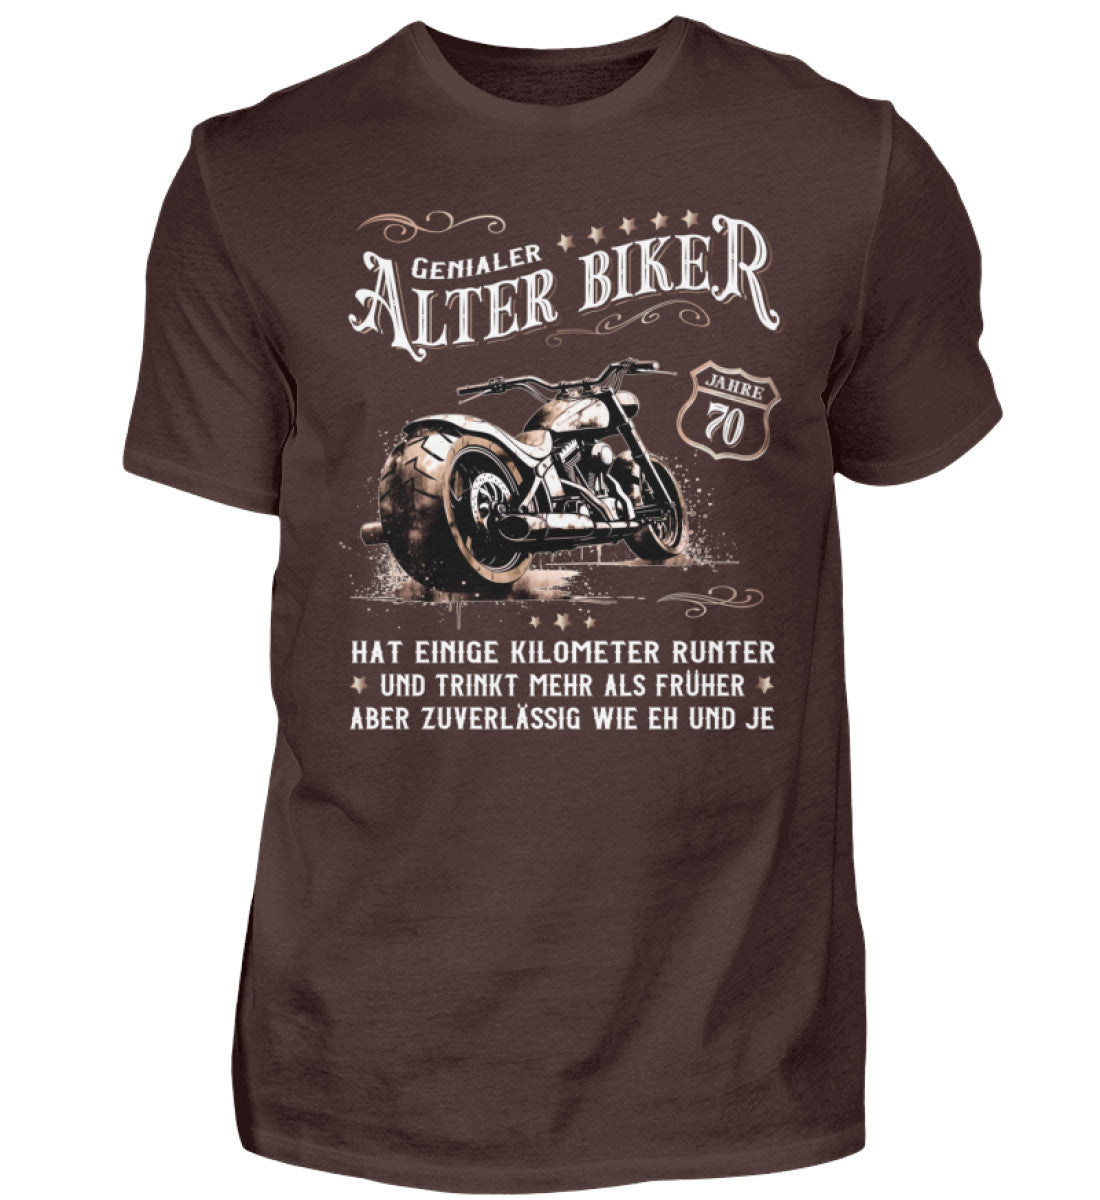 Ein Biker T-Shirt zum Geburtstag für Motorradfahrer von Wingbikers mit dem Aufdruck, Alter Biker - 70 Jahre - Einige Kilometer runter, trinkt mehr - aber zuverlässig wie eh und je - in braun.